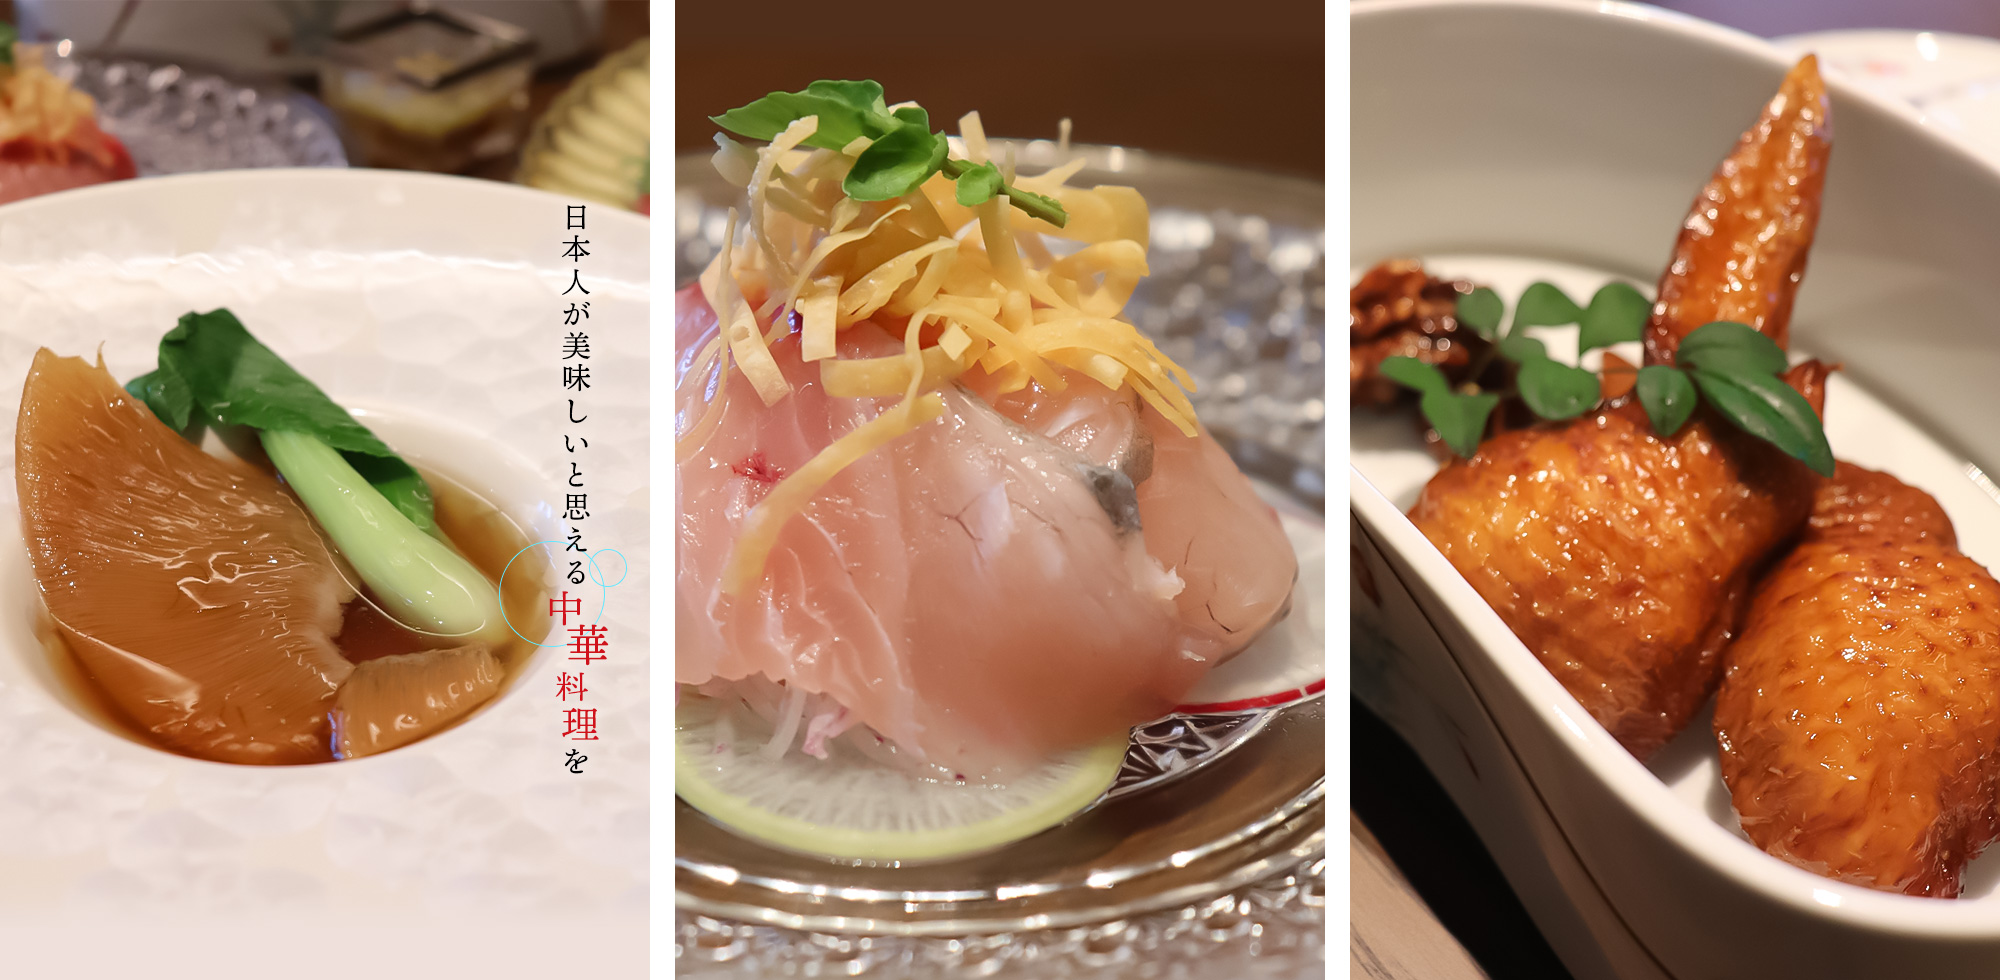 日本人が美味しいと思える中華料理を 完全貸切予約制で誰にも邪魔されない大切な時間を贅沢な料理と共にお過ごしください。